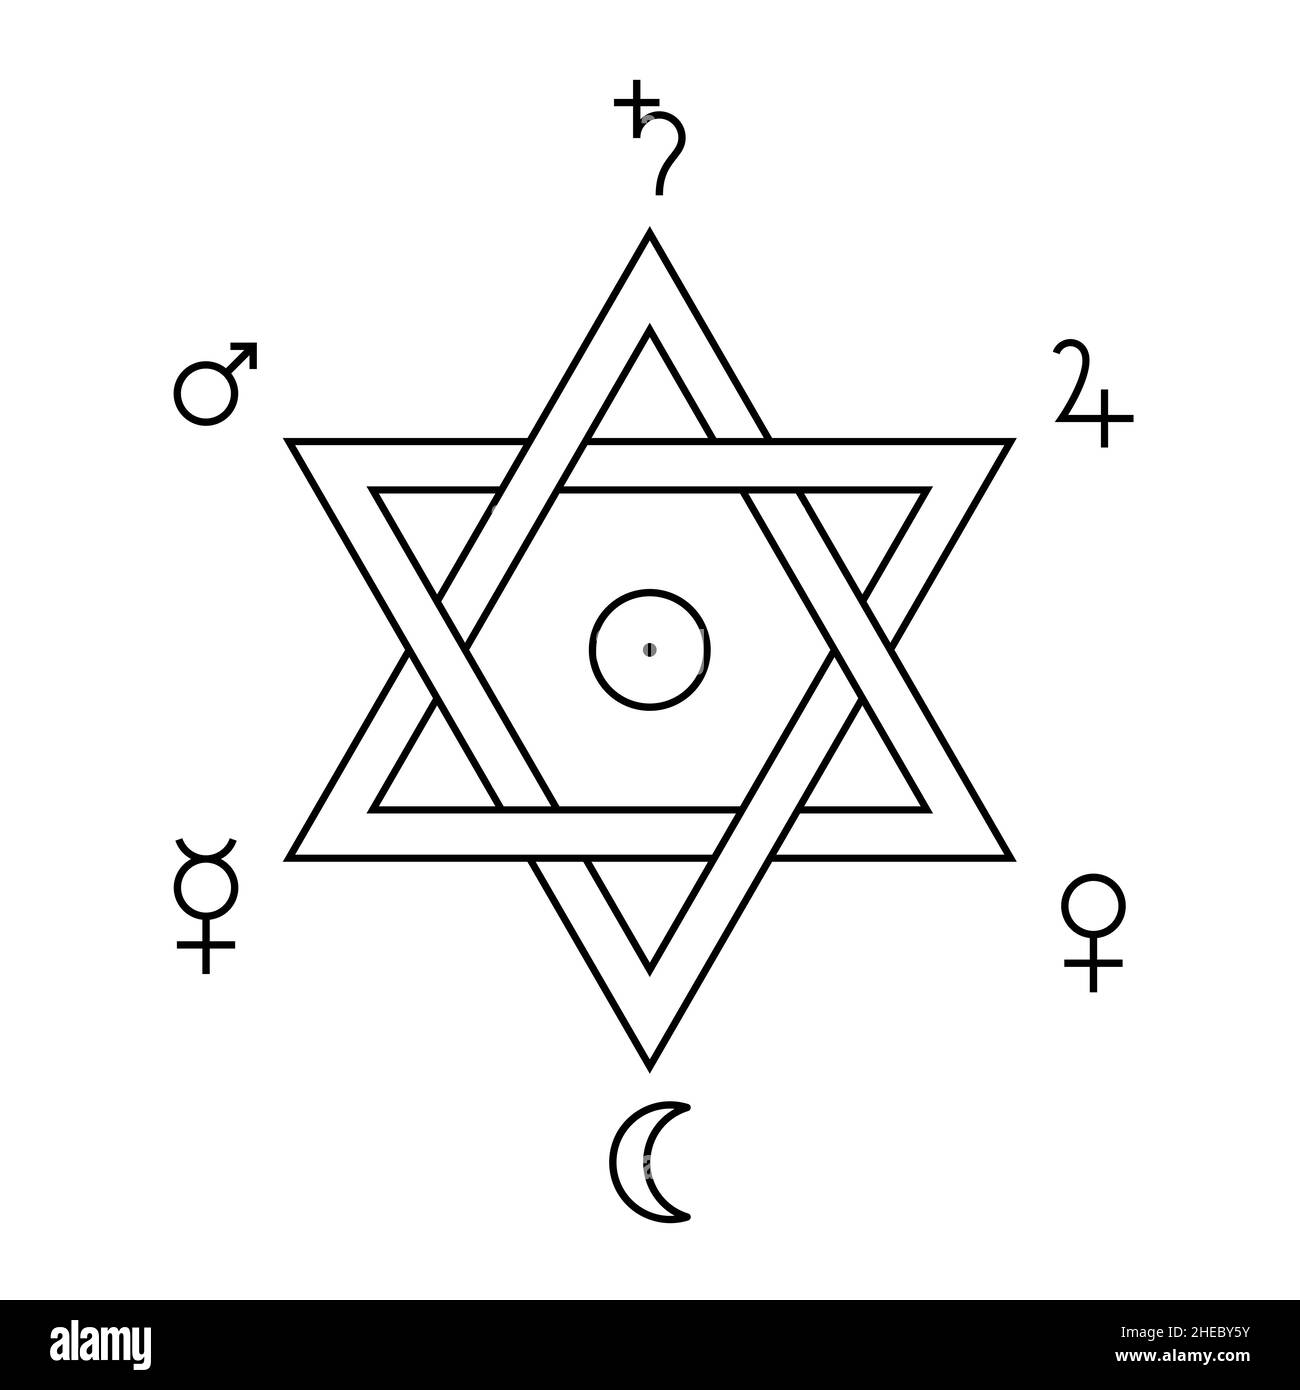 Sigillo di Salomone, con segni astrologici. Simbolo a forma di esagramma, attribuito al re Salomone, da cui si sviluppò nella mistica islamica ed ebraica. Foto Stock